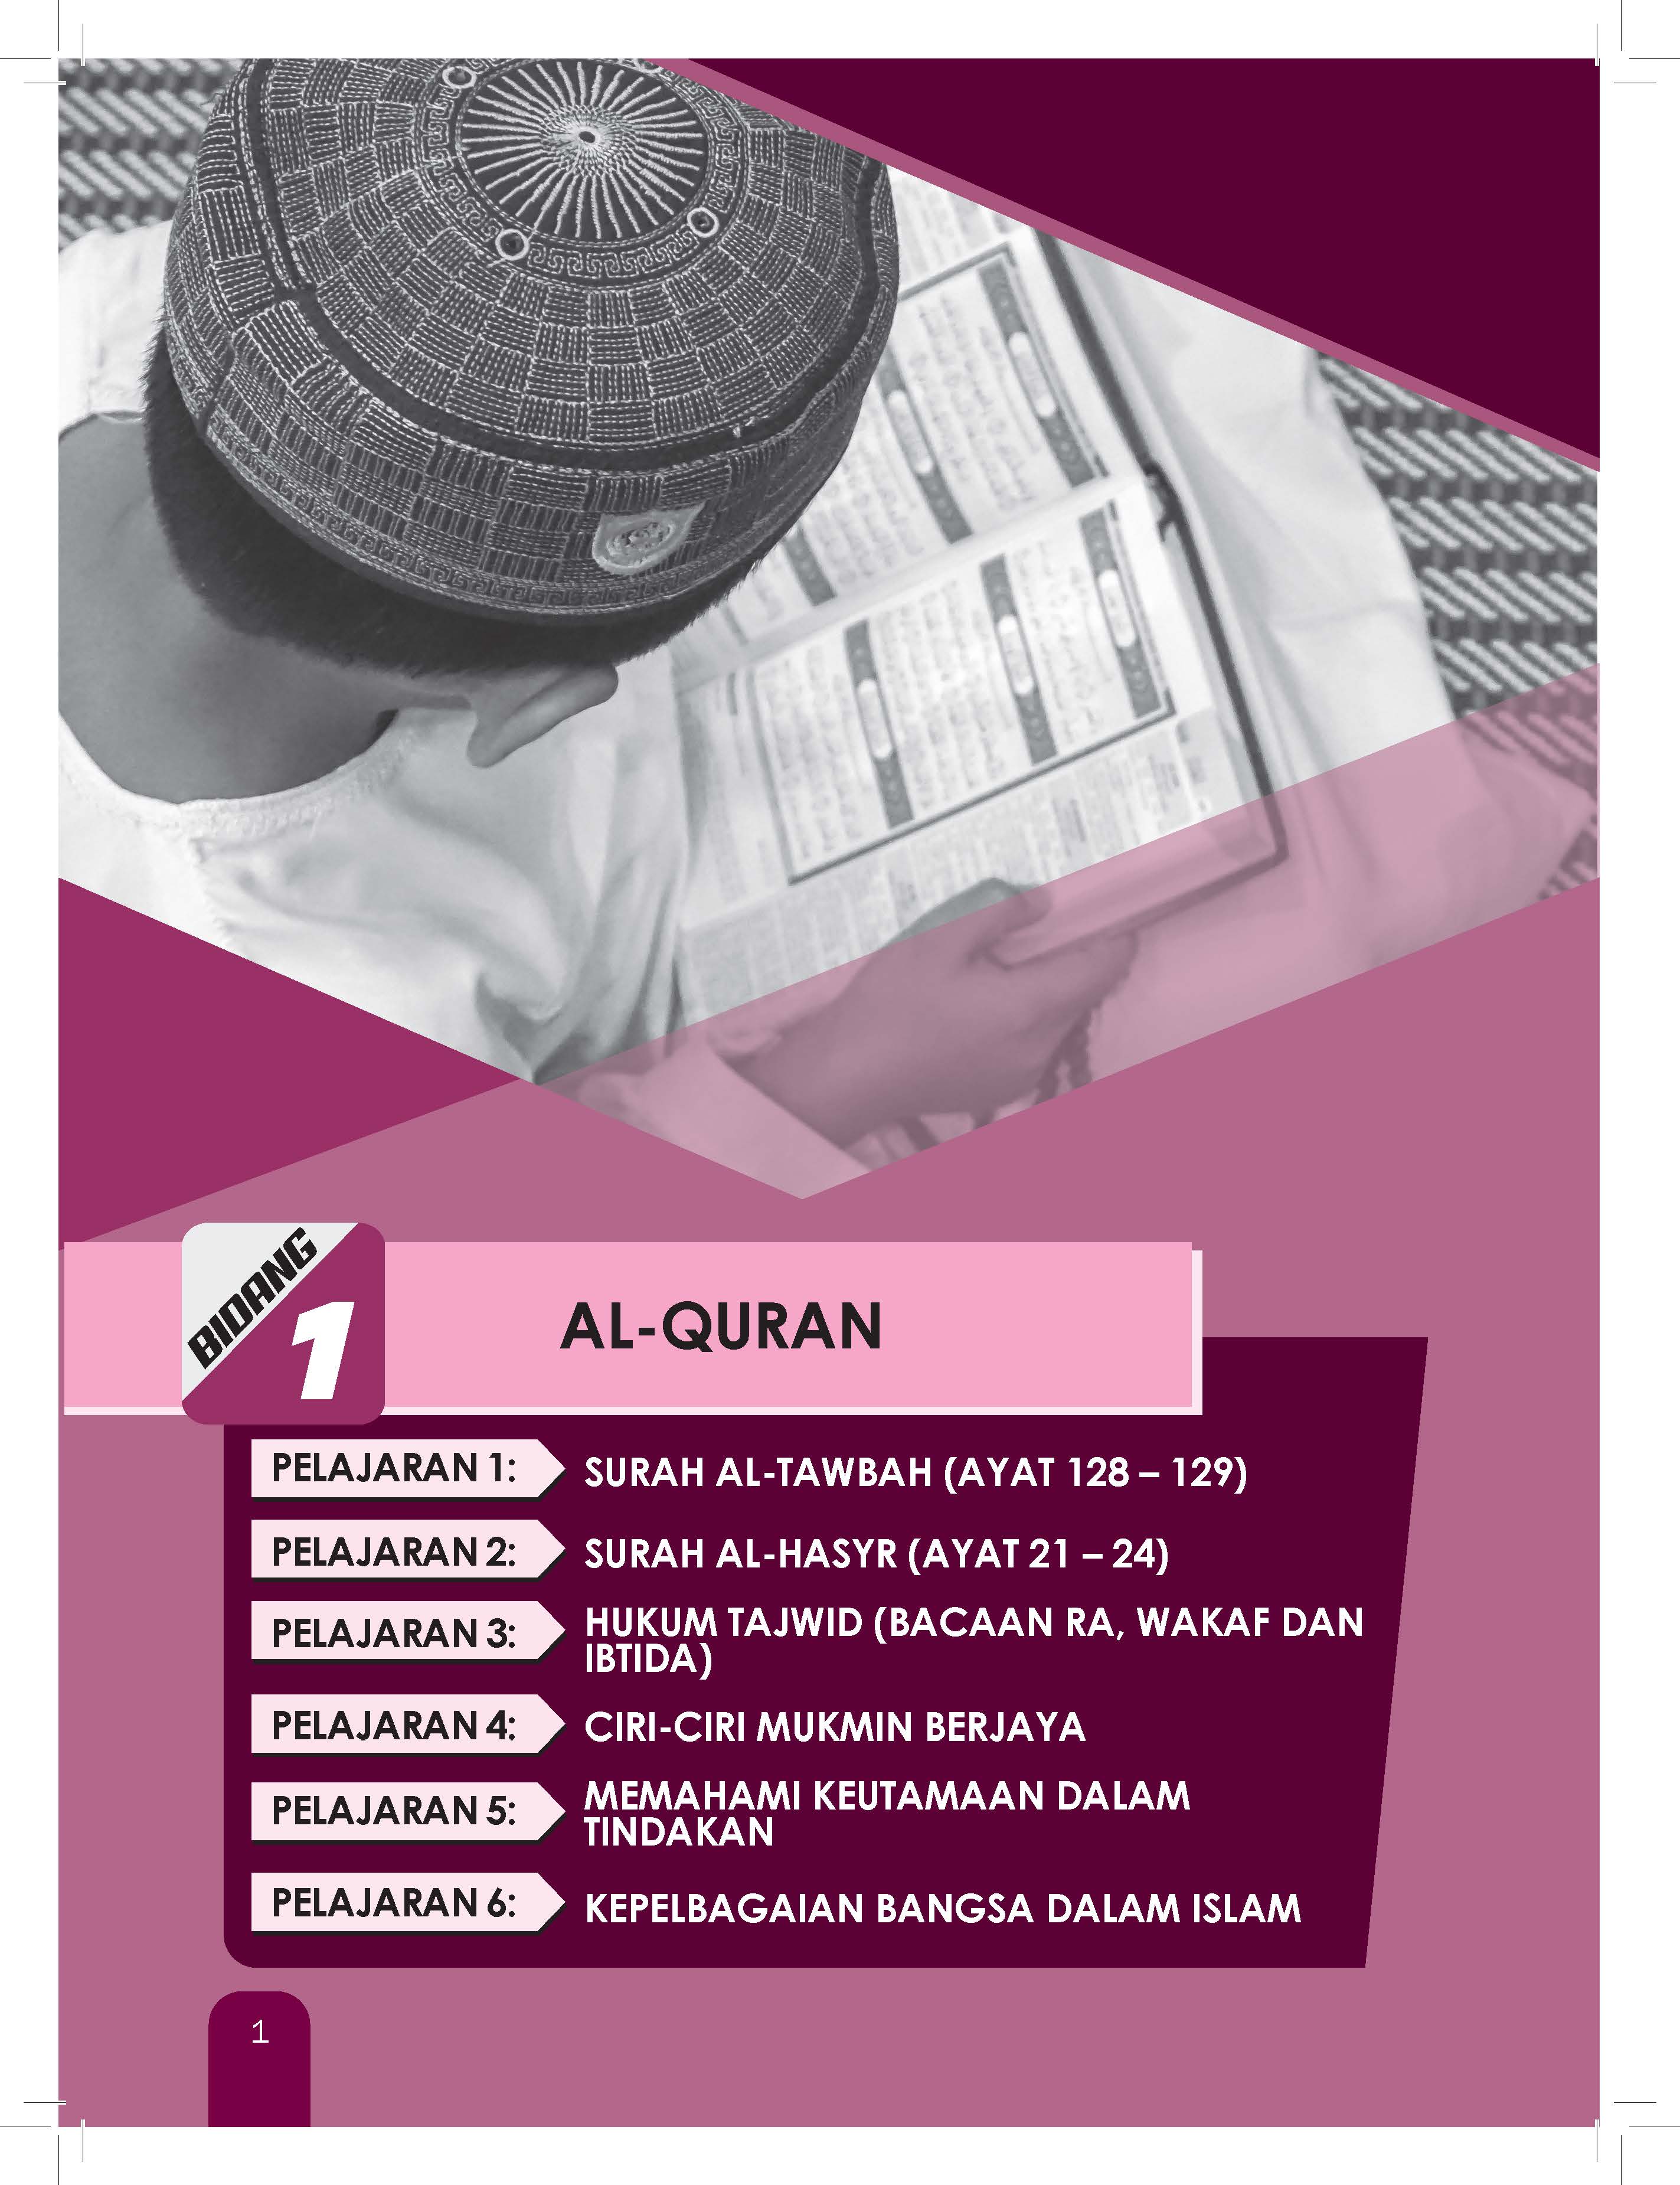 Great Impact Nota & Latihan Pendidikan Islam Tingkatan 5 - (TBBS1309)